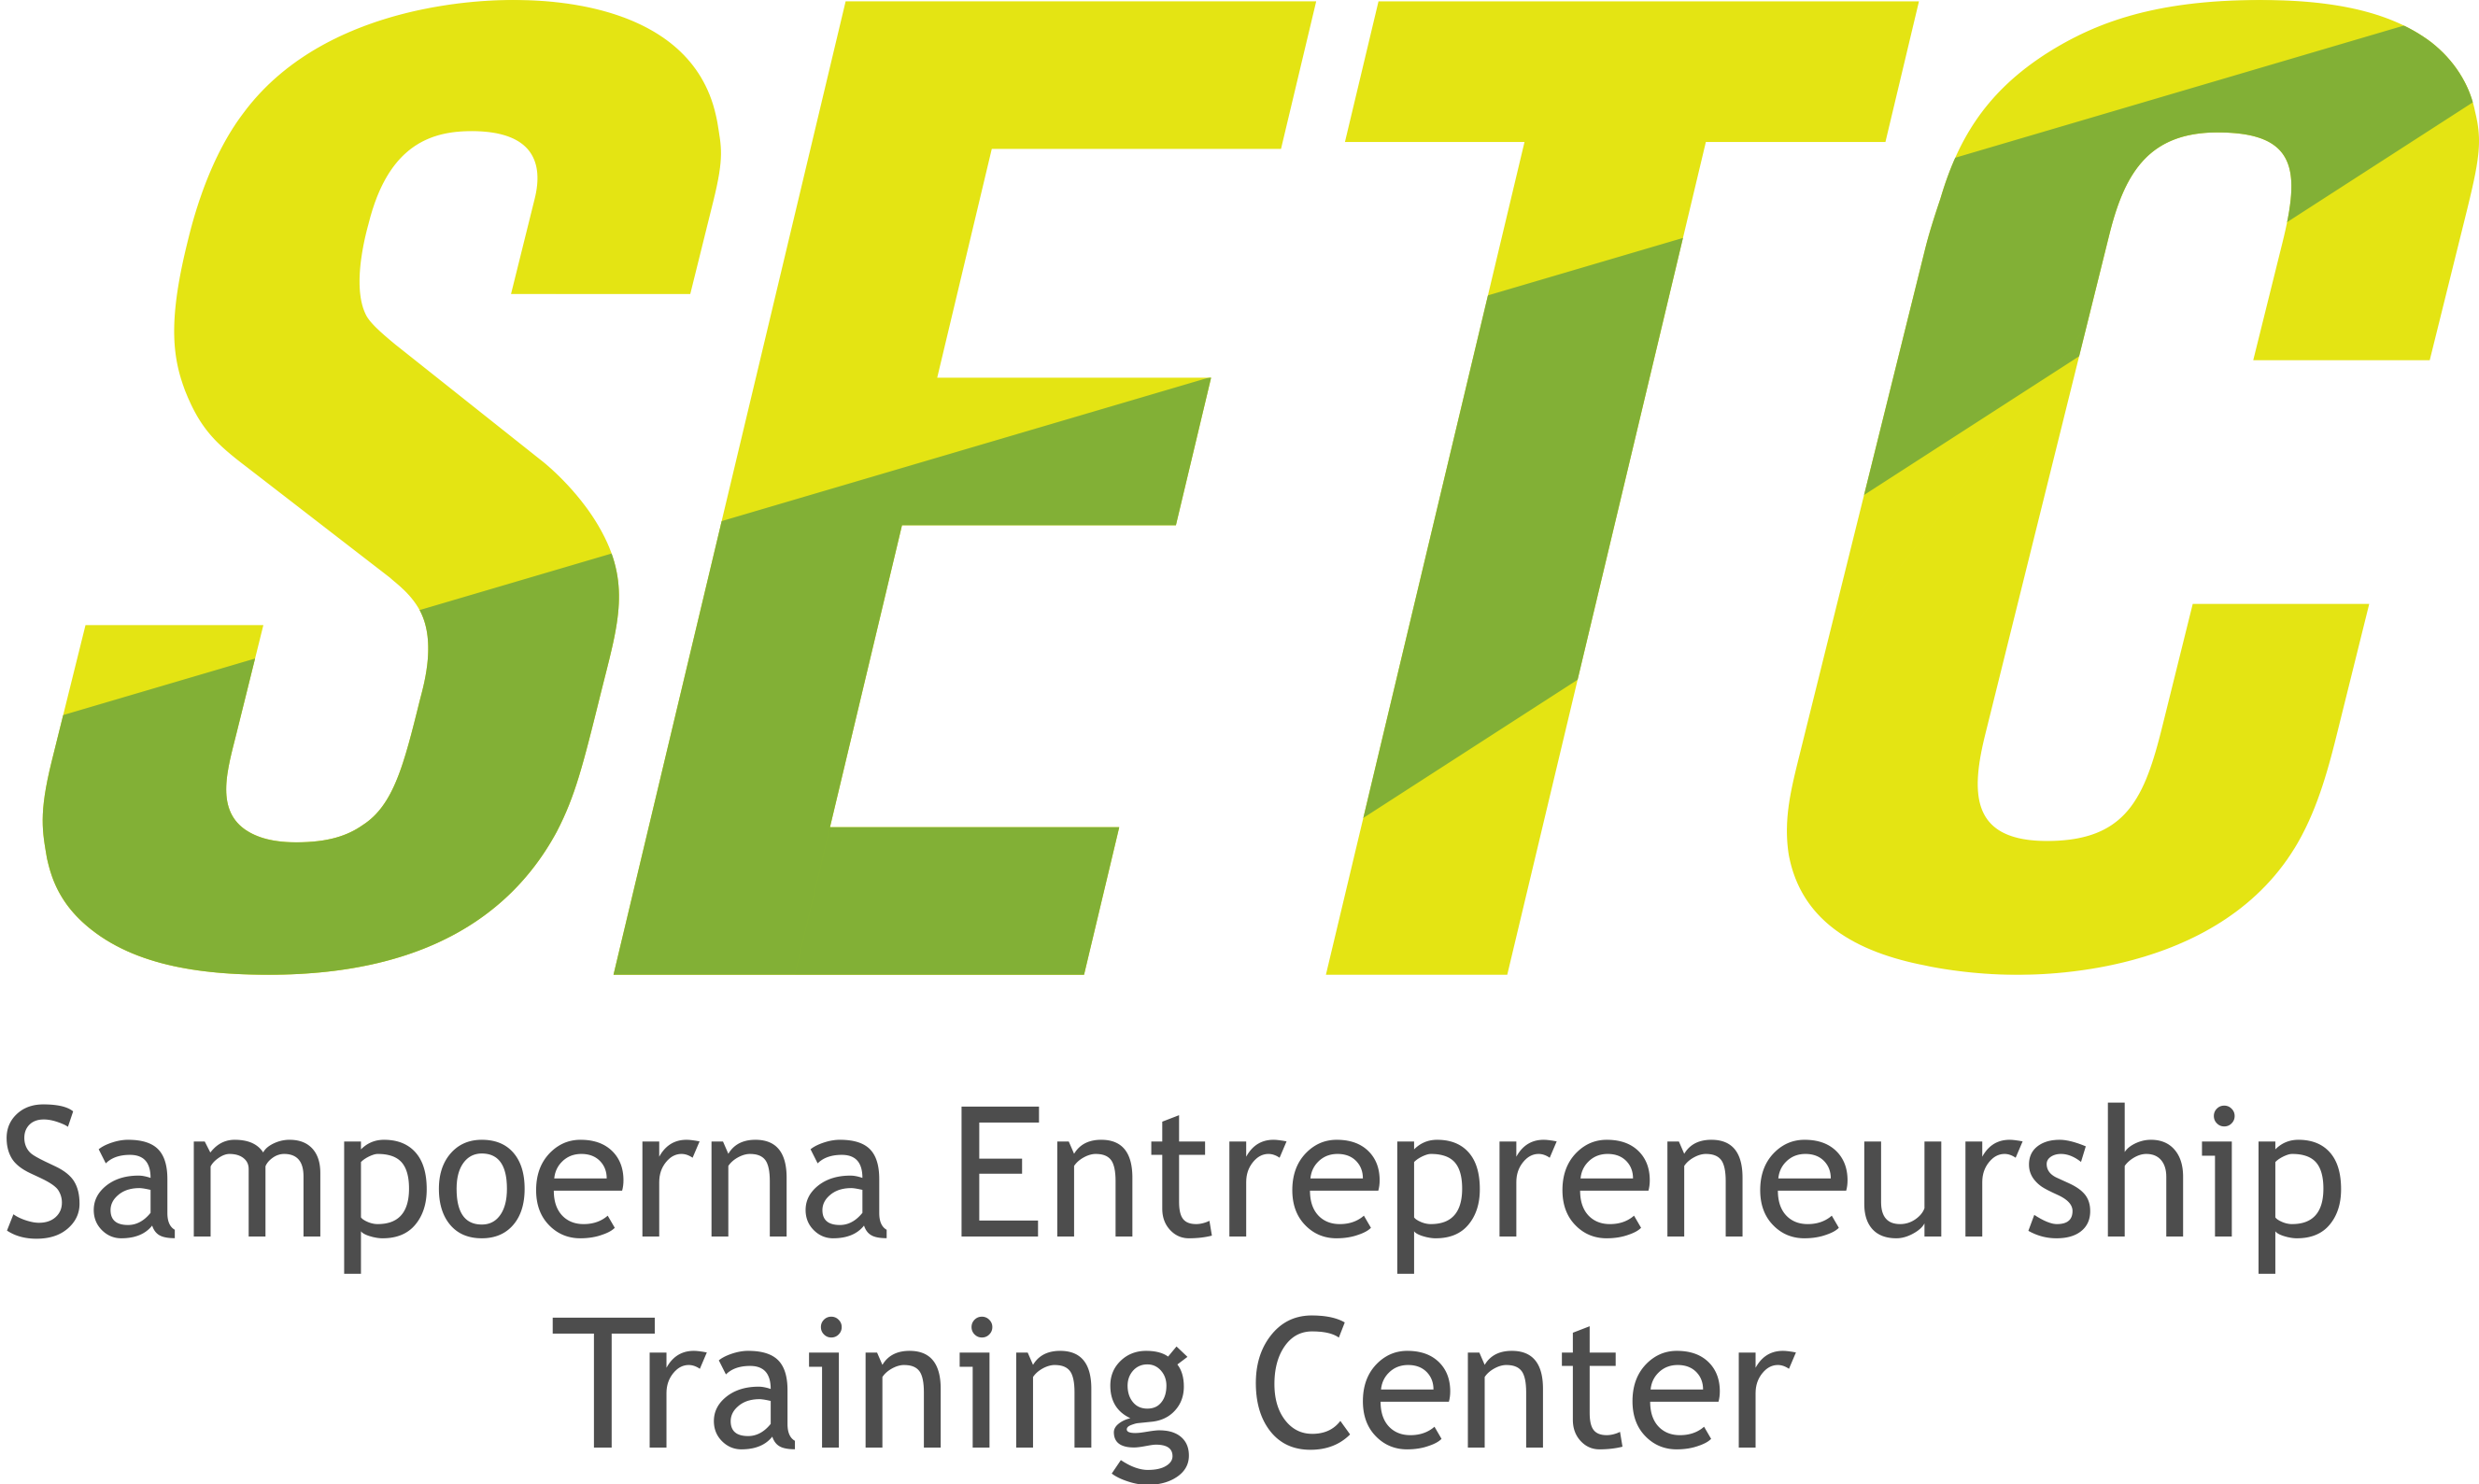 Sampoerna Entrepreneurship Training Center